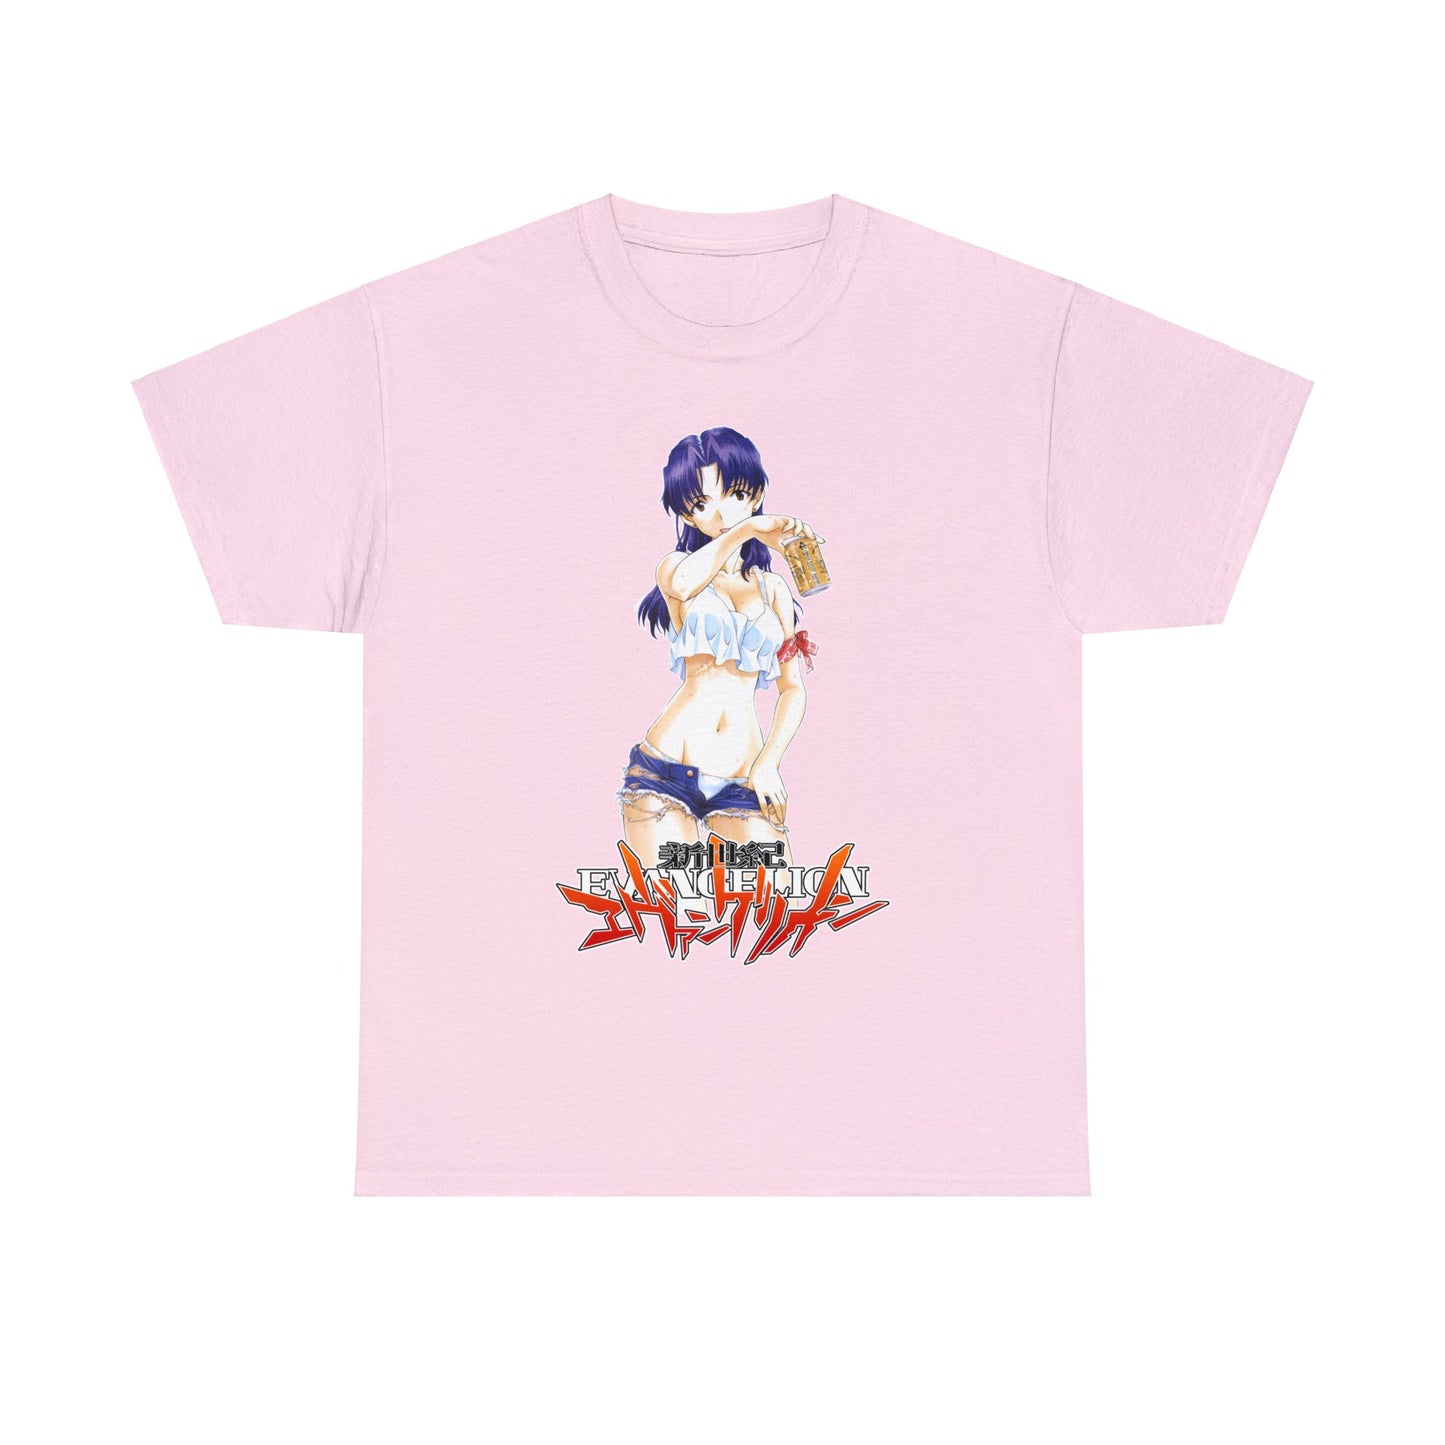 Neon Genesis Evangelion - Misato Vintage T-Shirt